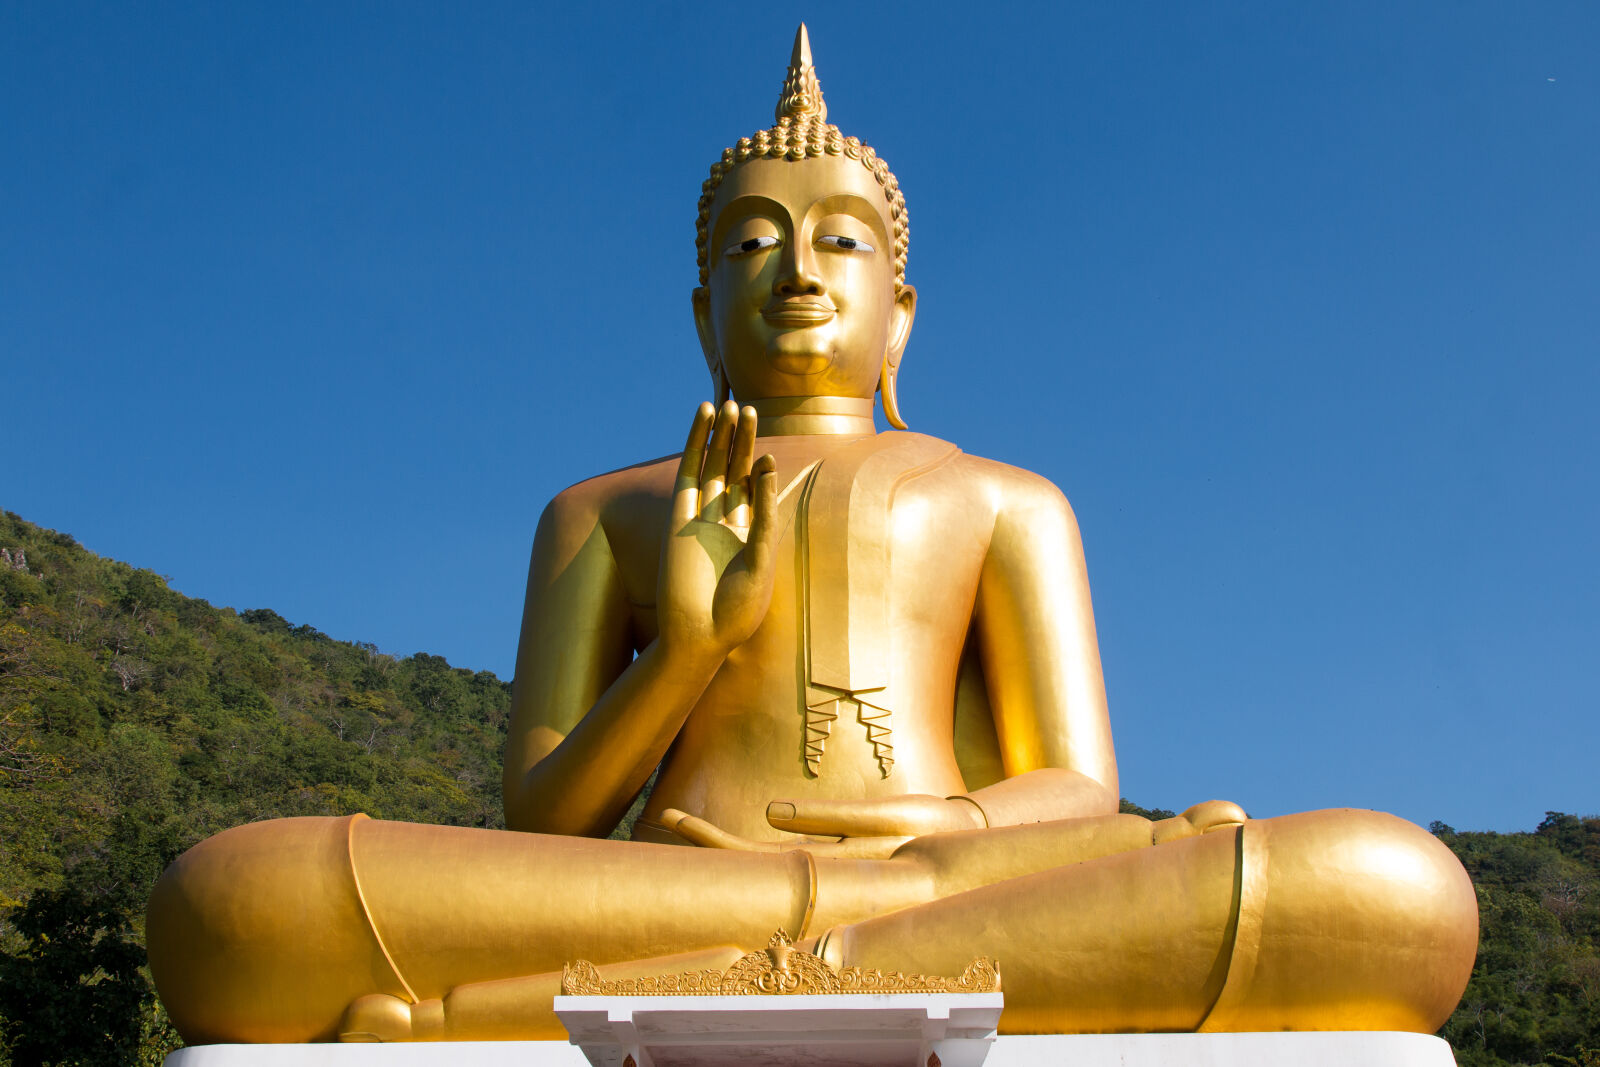 Canon EOS 70D sample photo. Statue, golden, buddha, sky photography